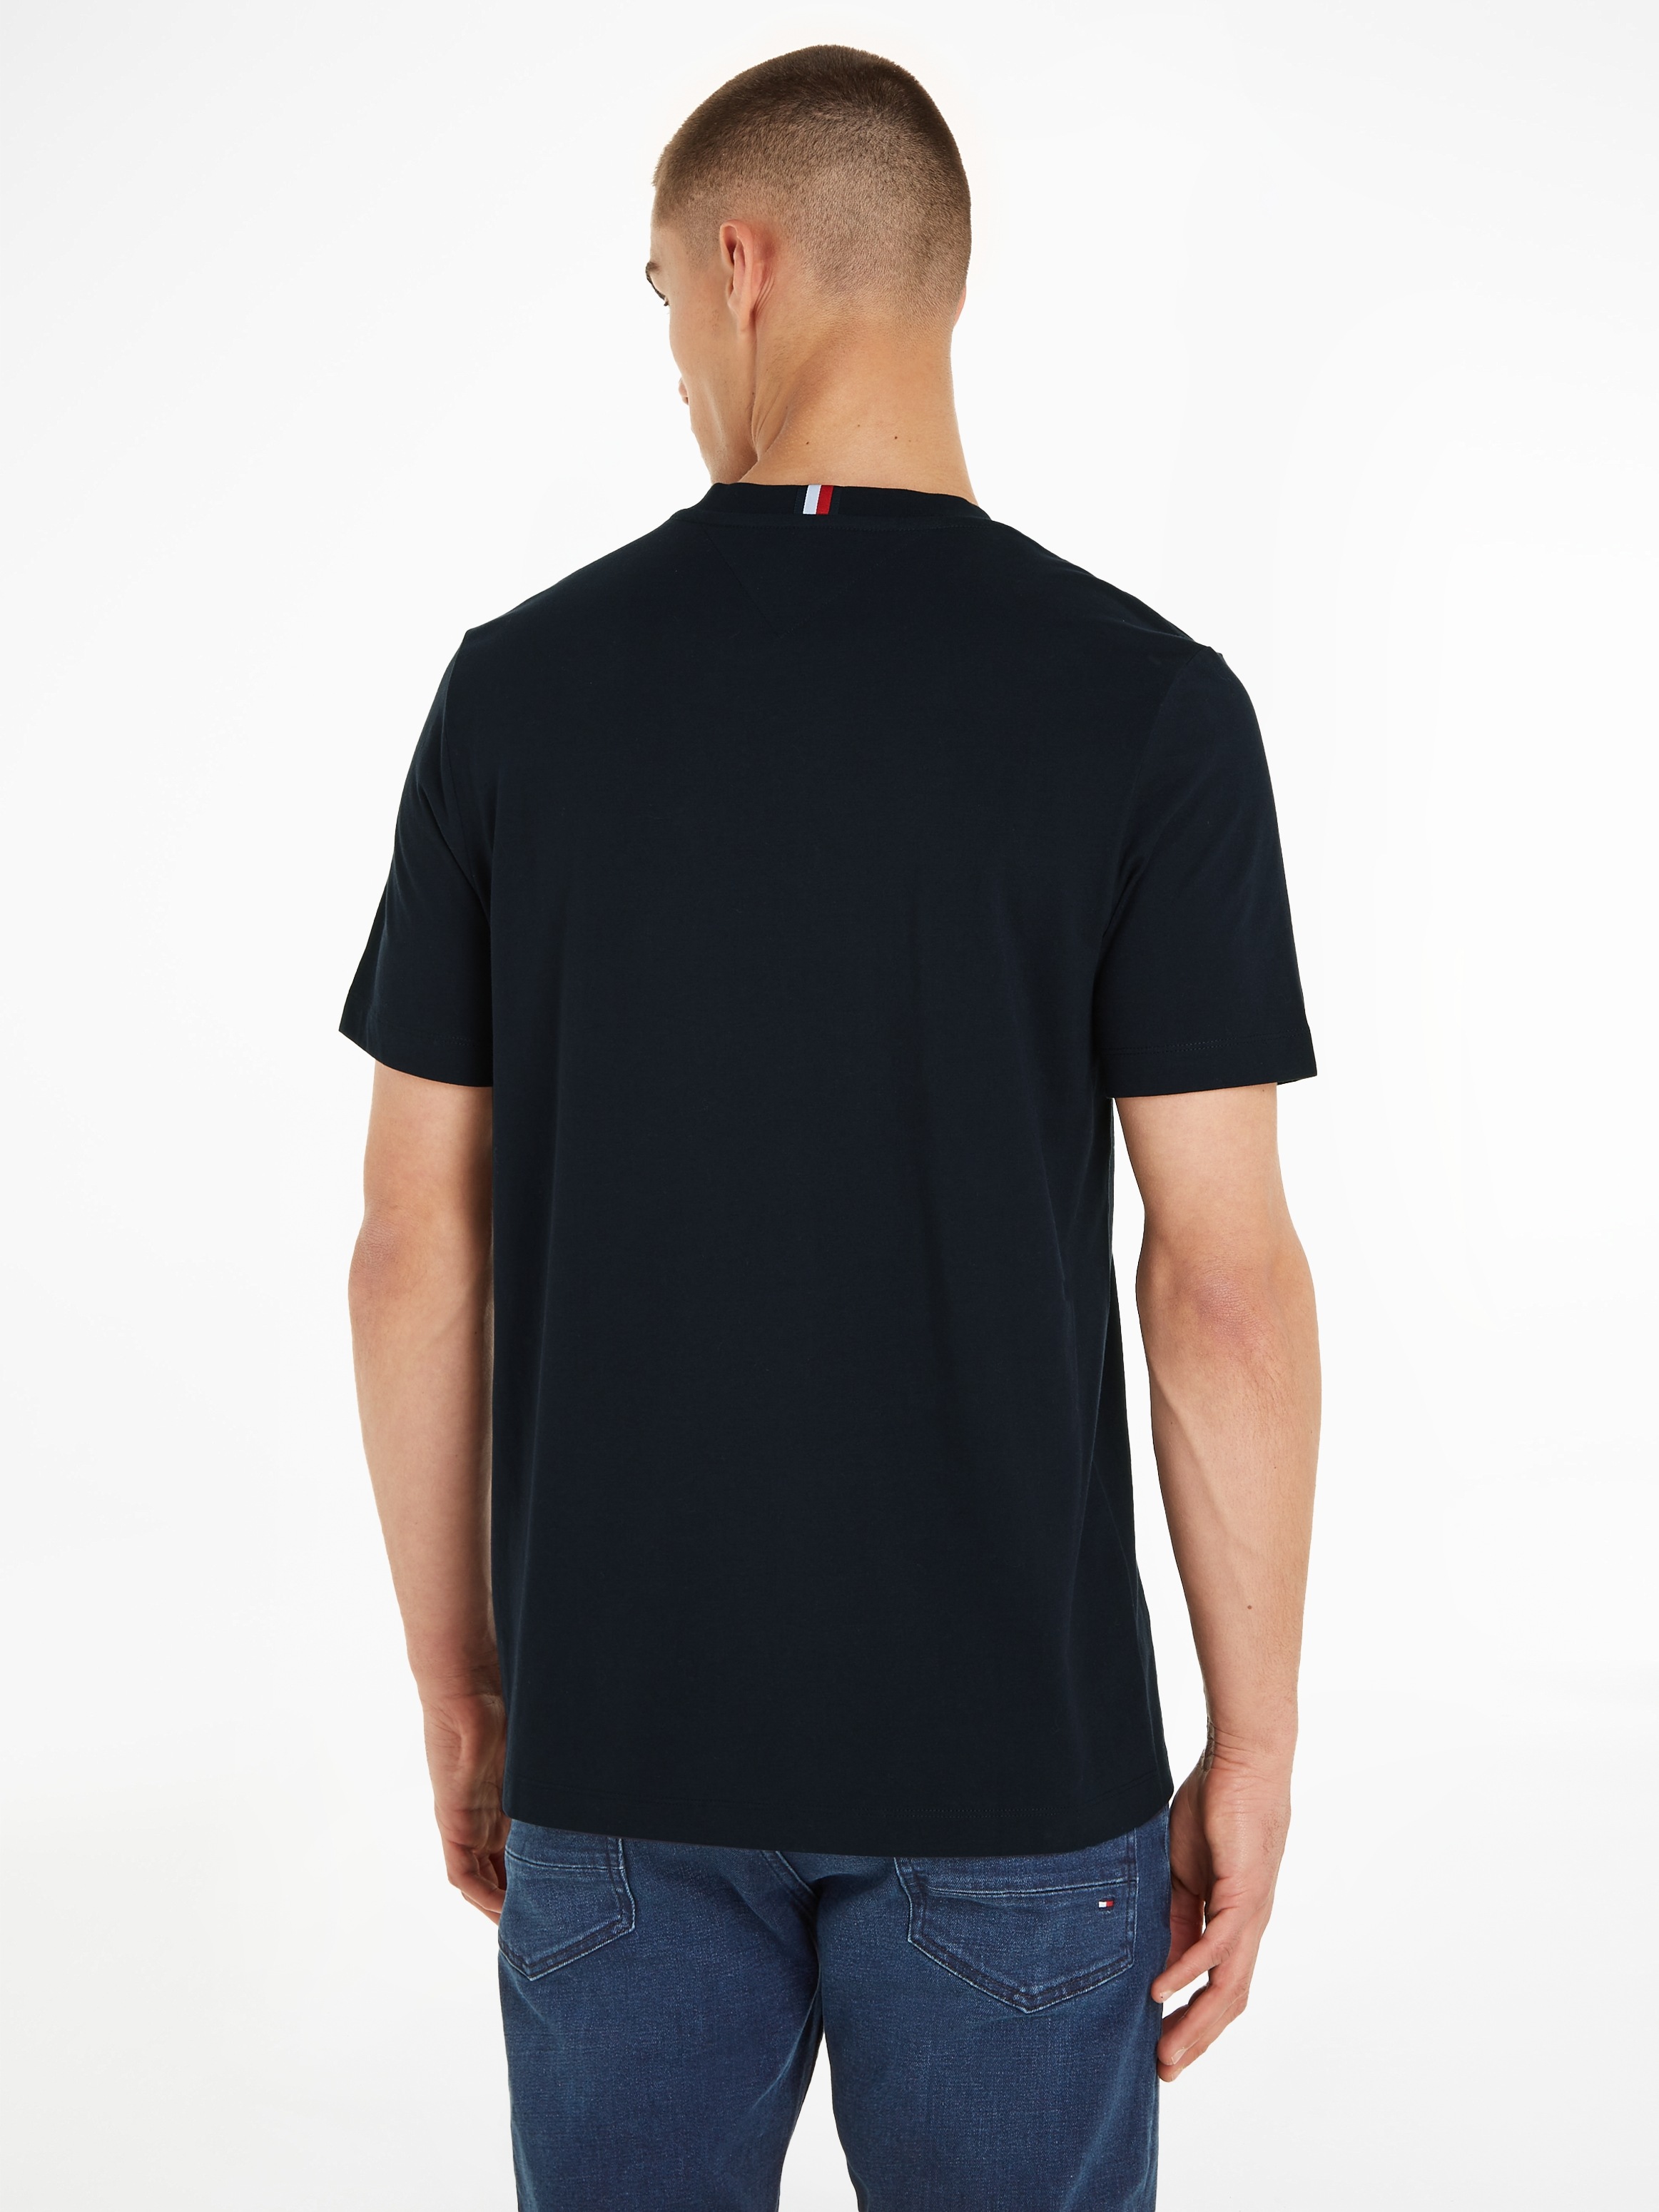 online STRIPE TEE«, mit kaufen »MONOTYPE Tommy CHEST Hilfiger T-Shirt Markenlogo